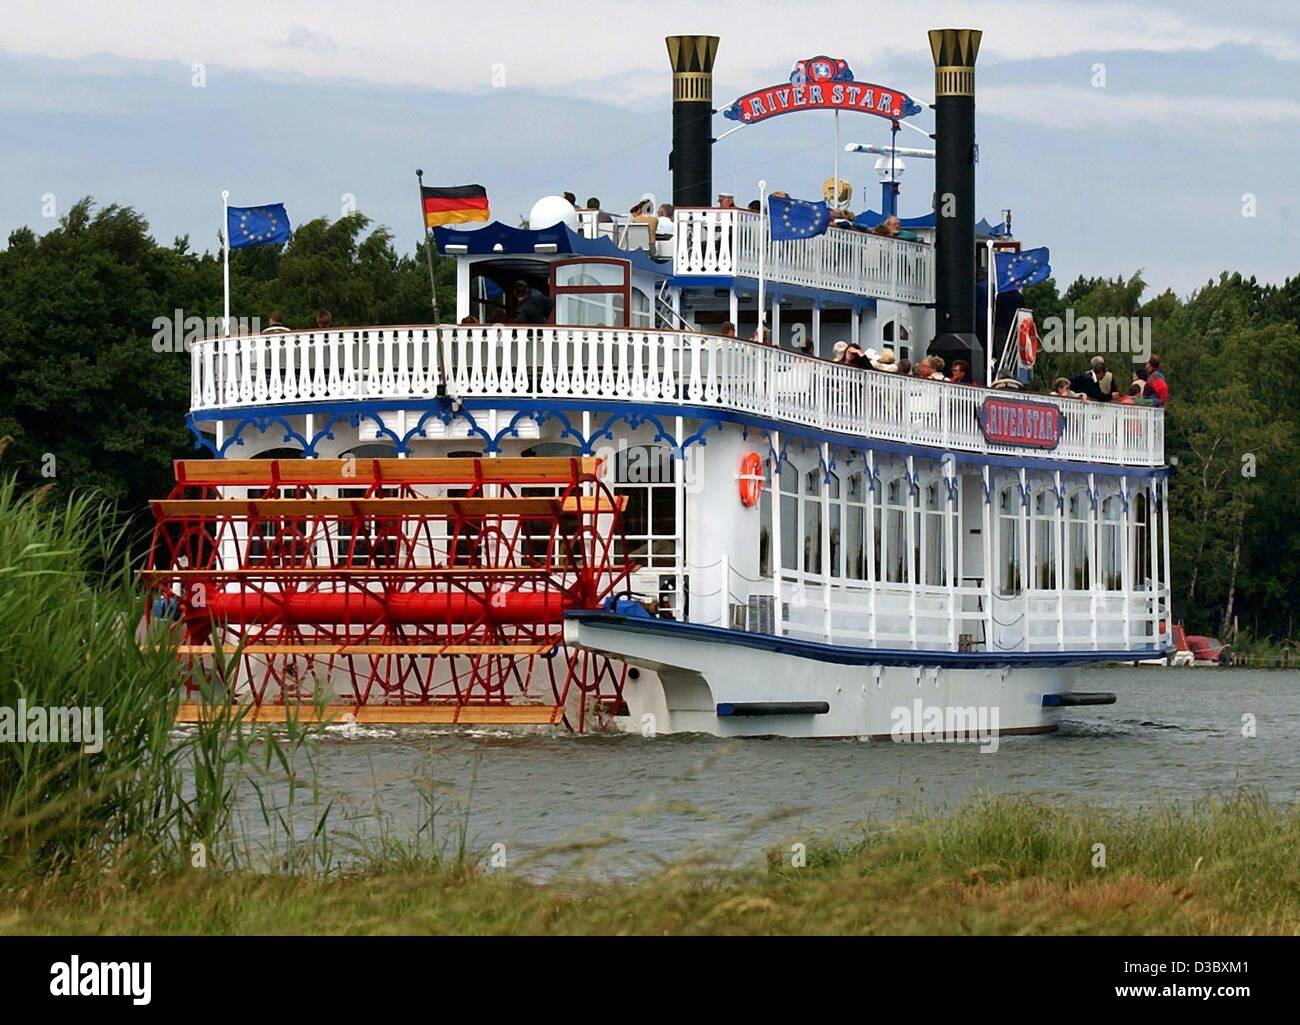 (Afp) - pas sur le Mississippi, mais sur le bateau à vapeur de la rivière Prerow Star croisières le long de la rivière, dans la région de naissance, le nord de l'Allemagne, le 3 juillet 2003. Le navire de 33 m de long a été construite en Kosel, Pologne, et croisières tous les jours sur les lacs du parc national Vorpommersche Boddenlandschaft. Banque D'Images